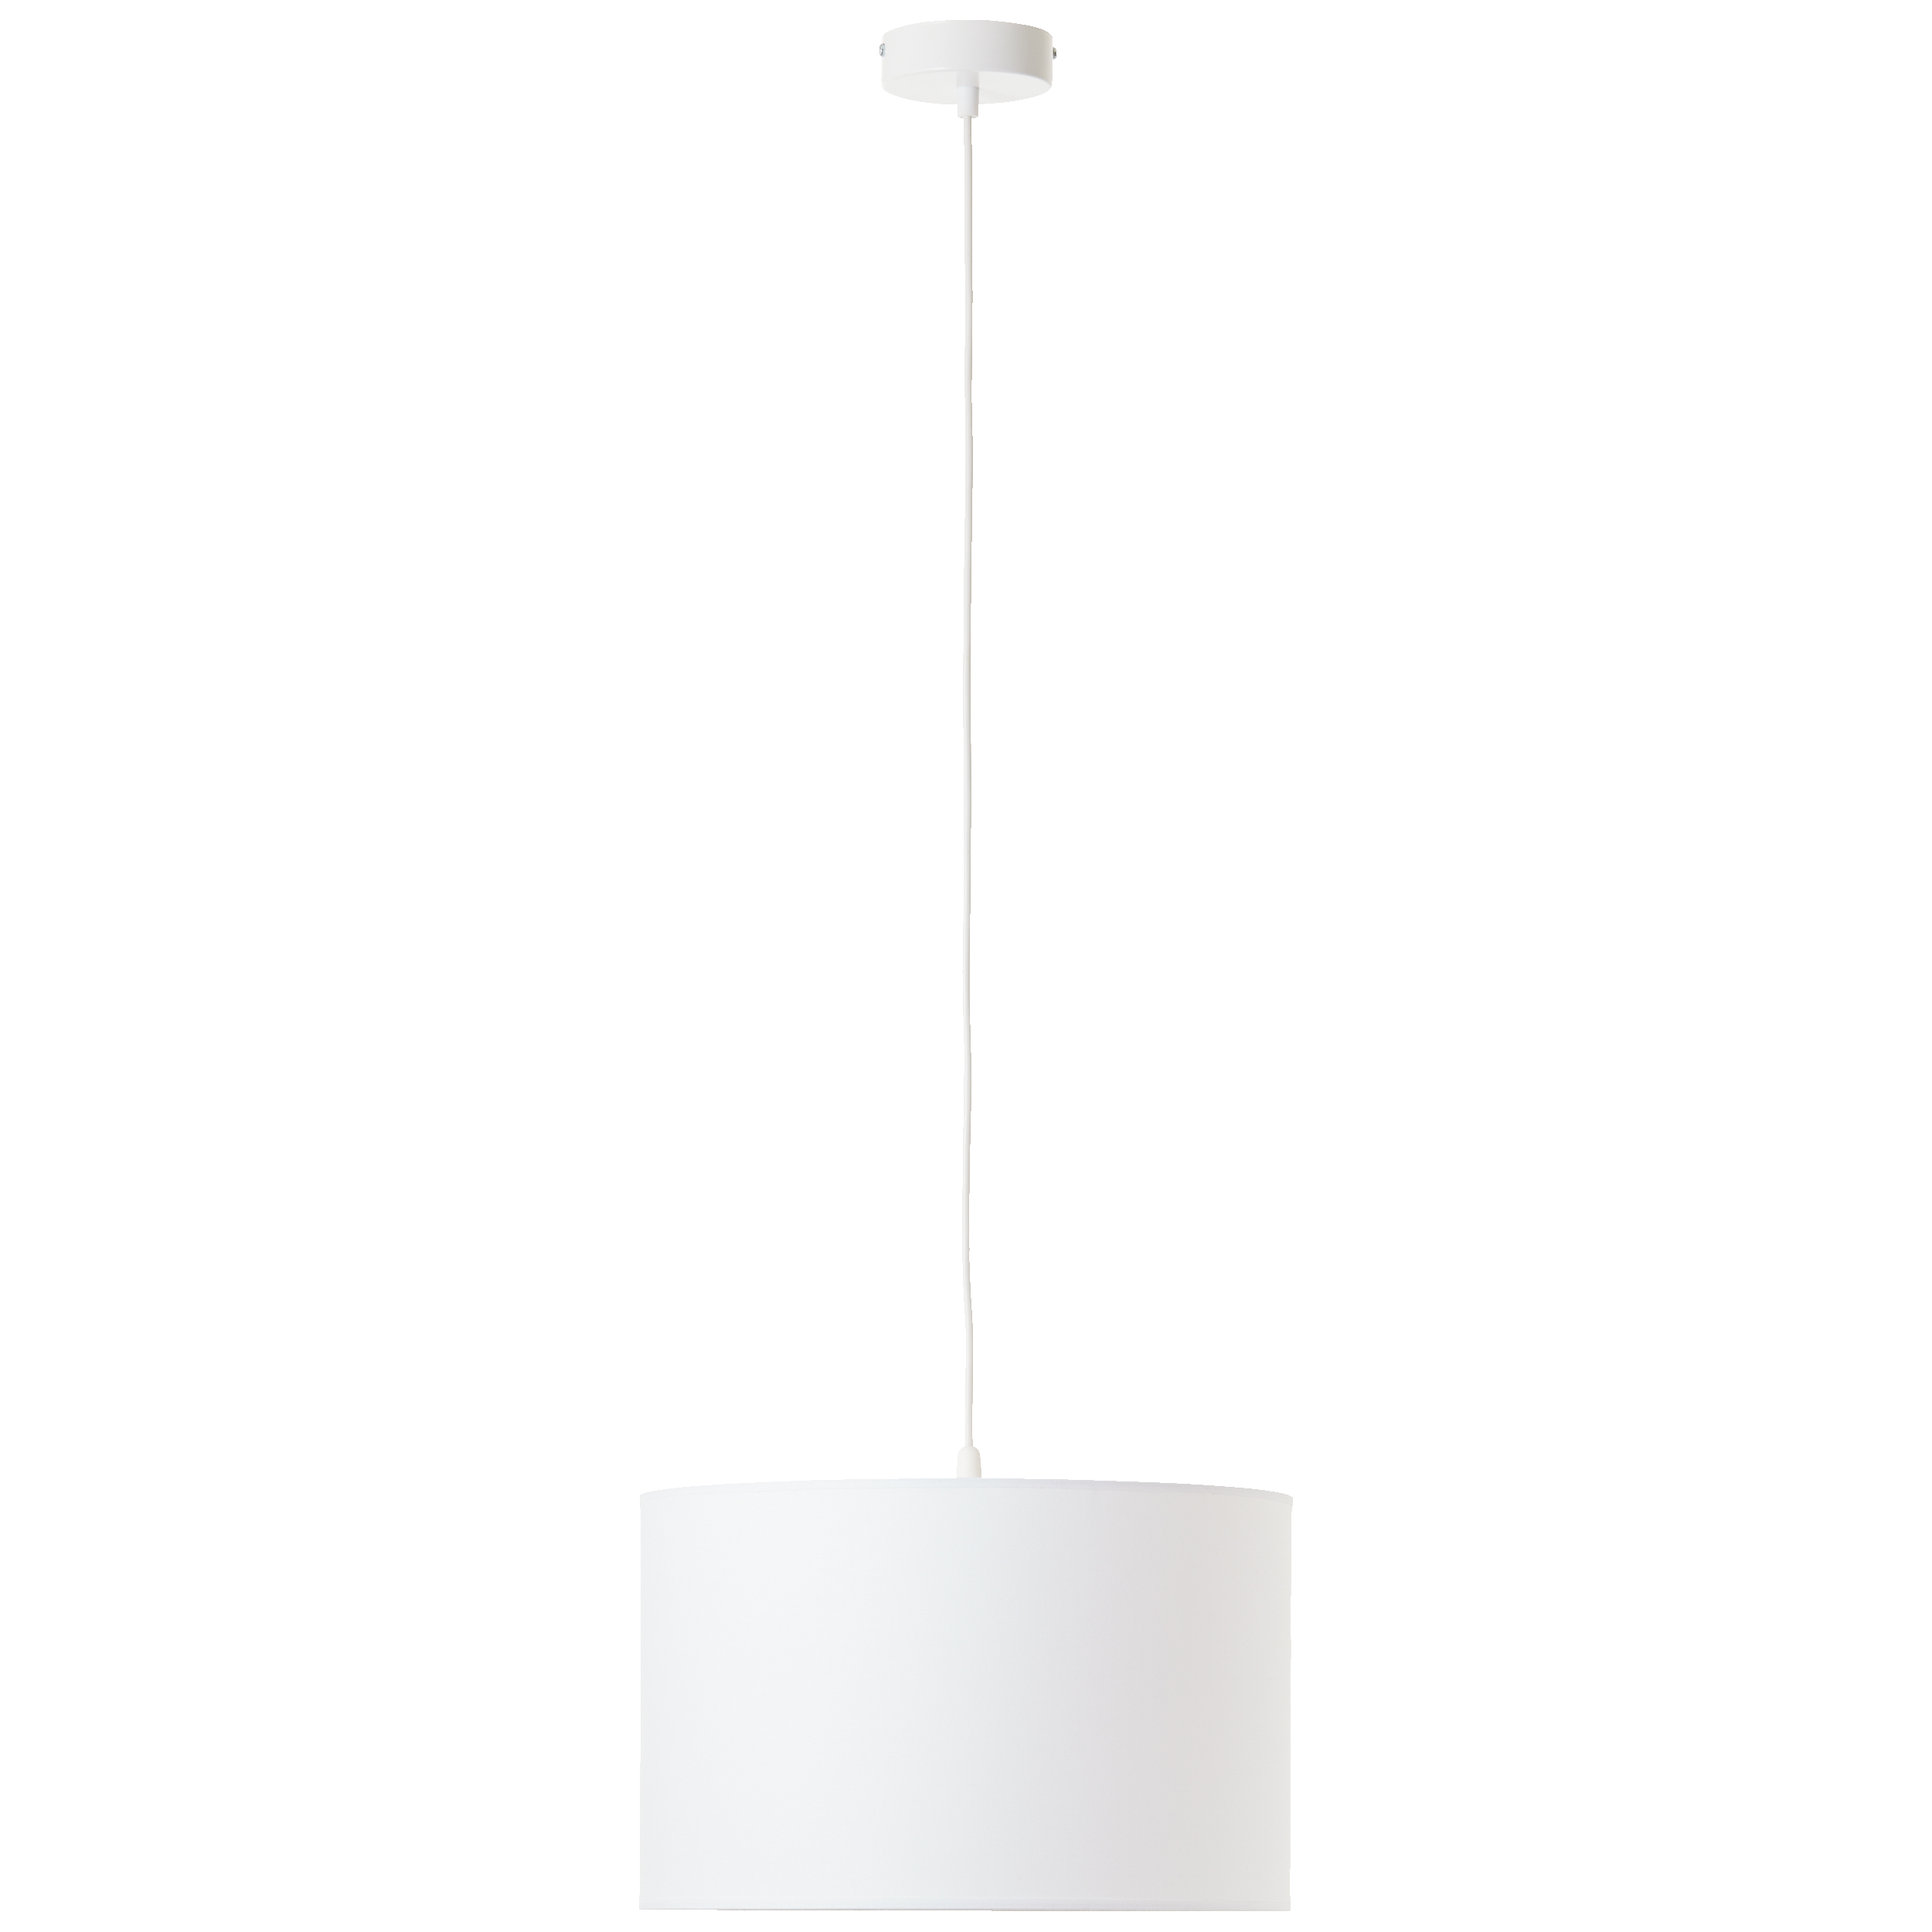 Hängelampe mit Stoffschirm weiß · Lightbox Leuchten & Licht GmbH